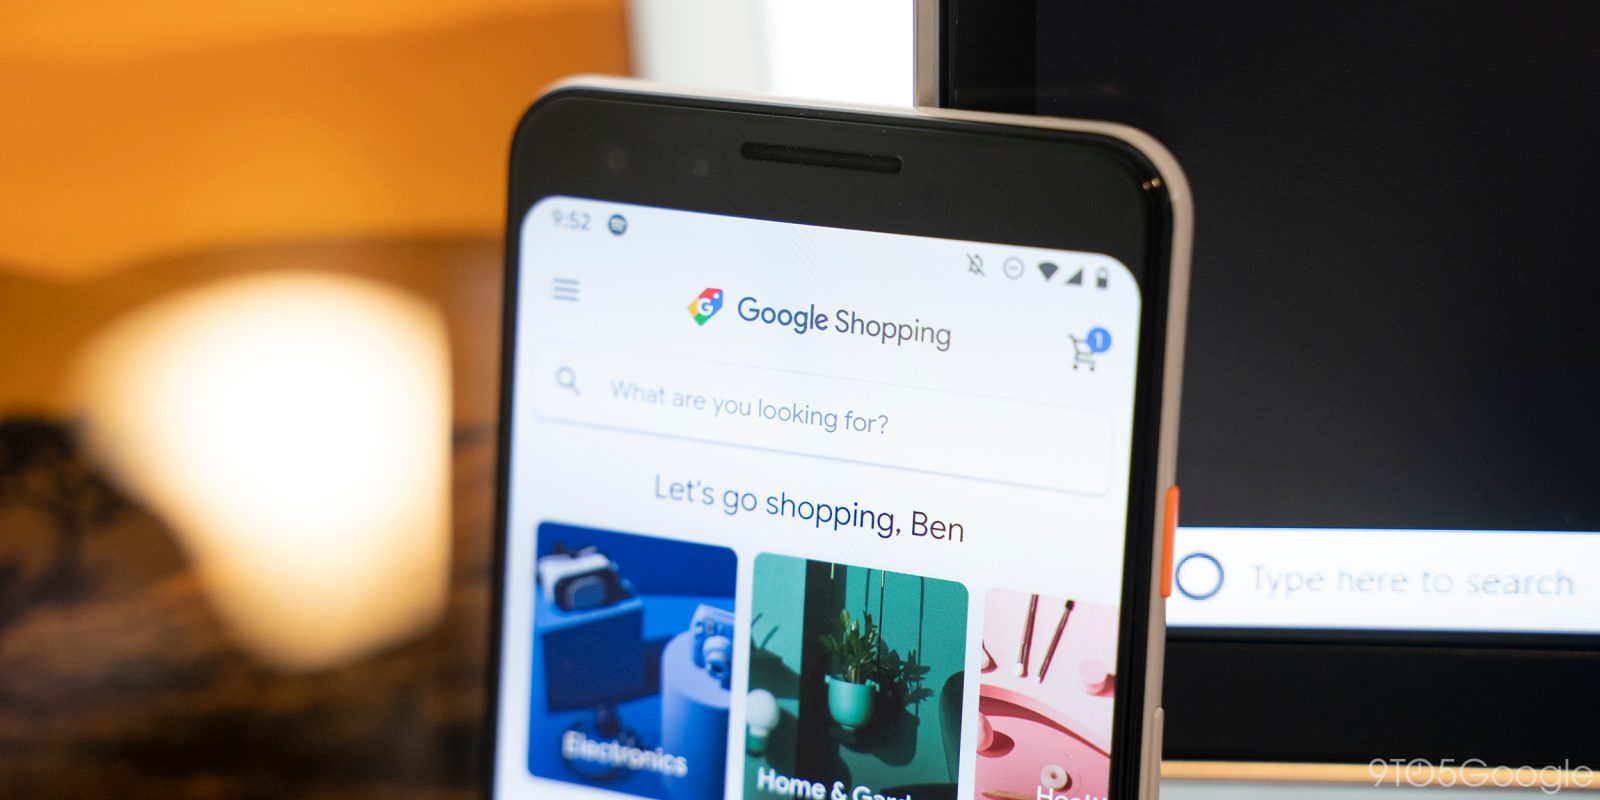 google shopping launch